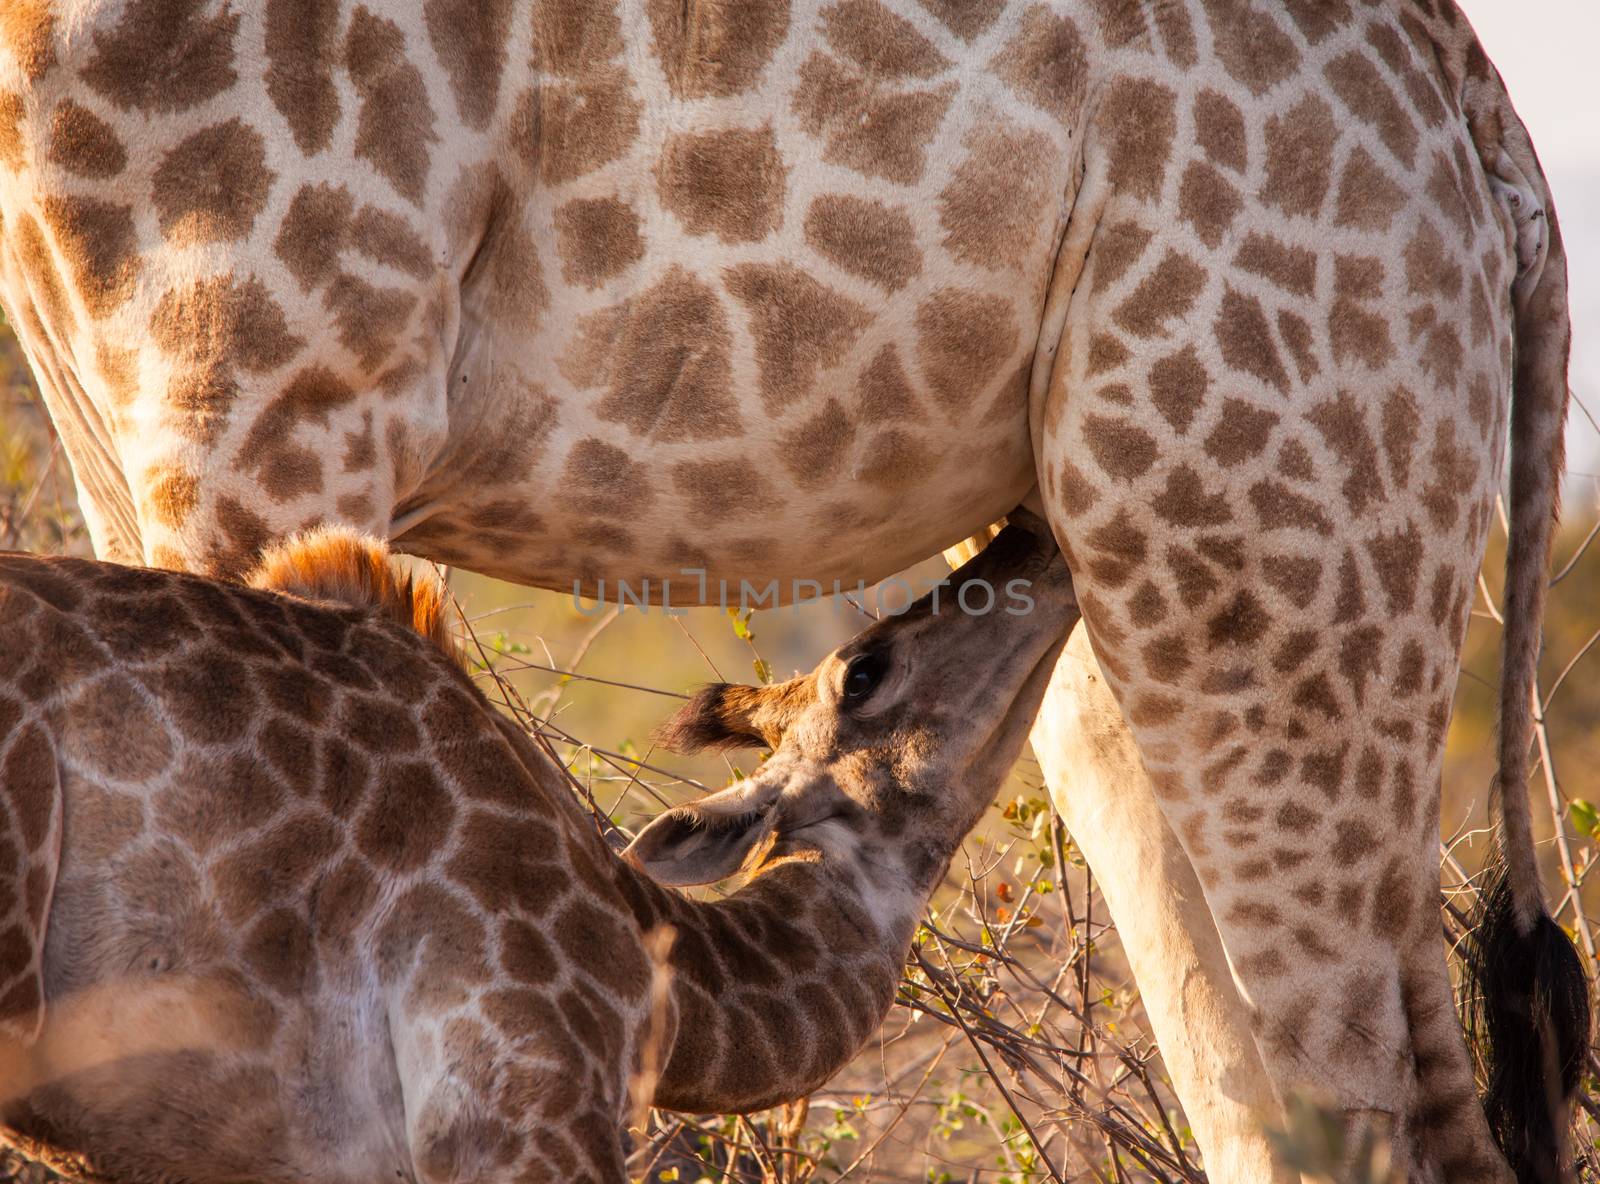 Suckling giraffe by kobus_peche